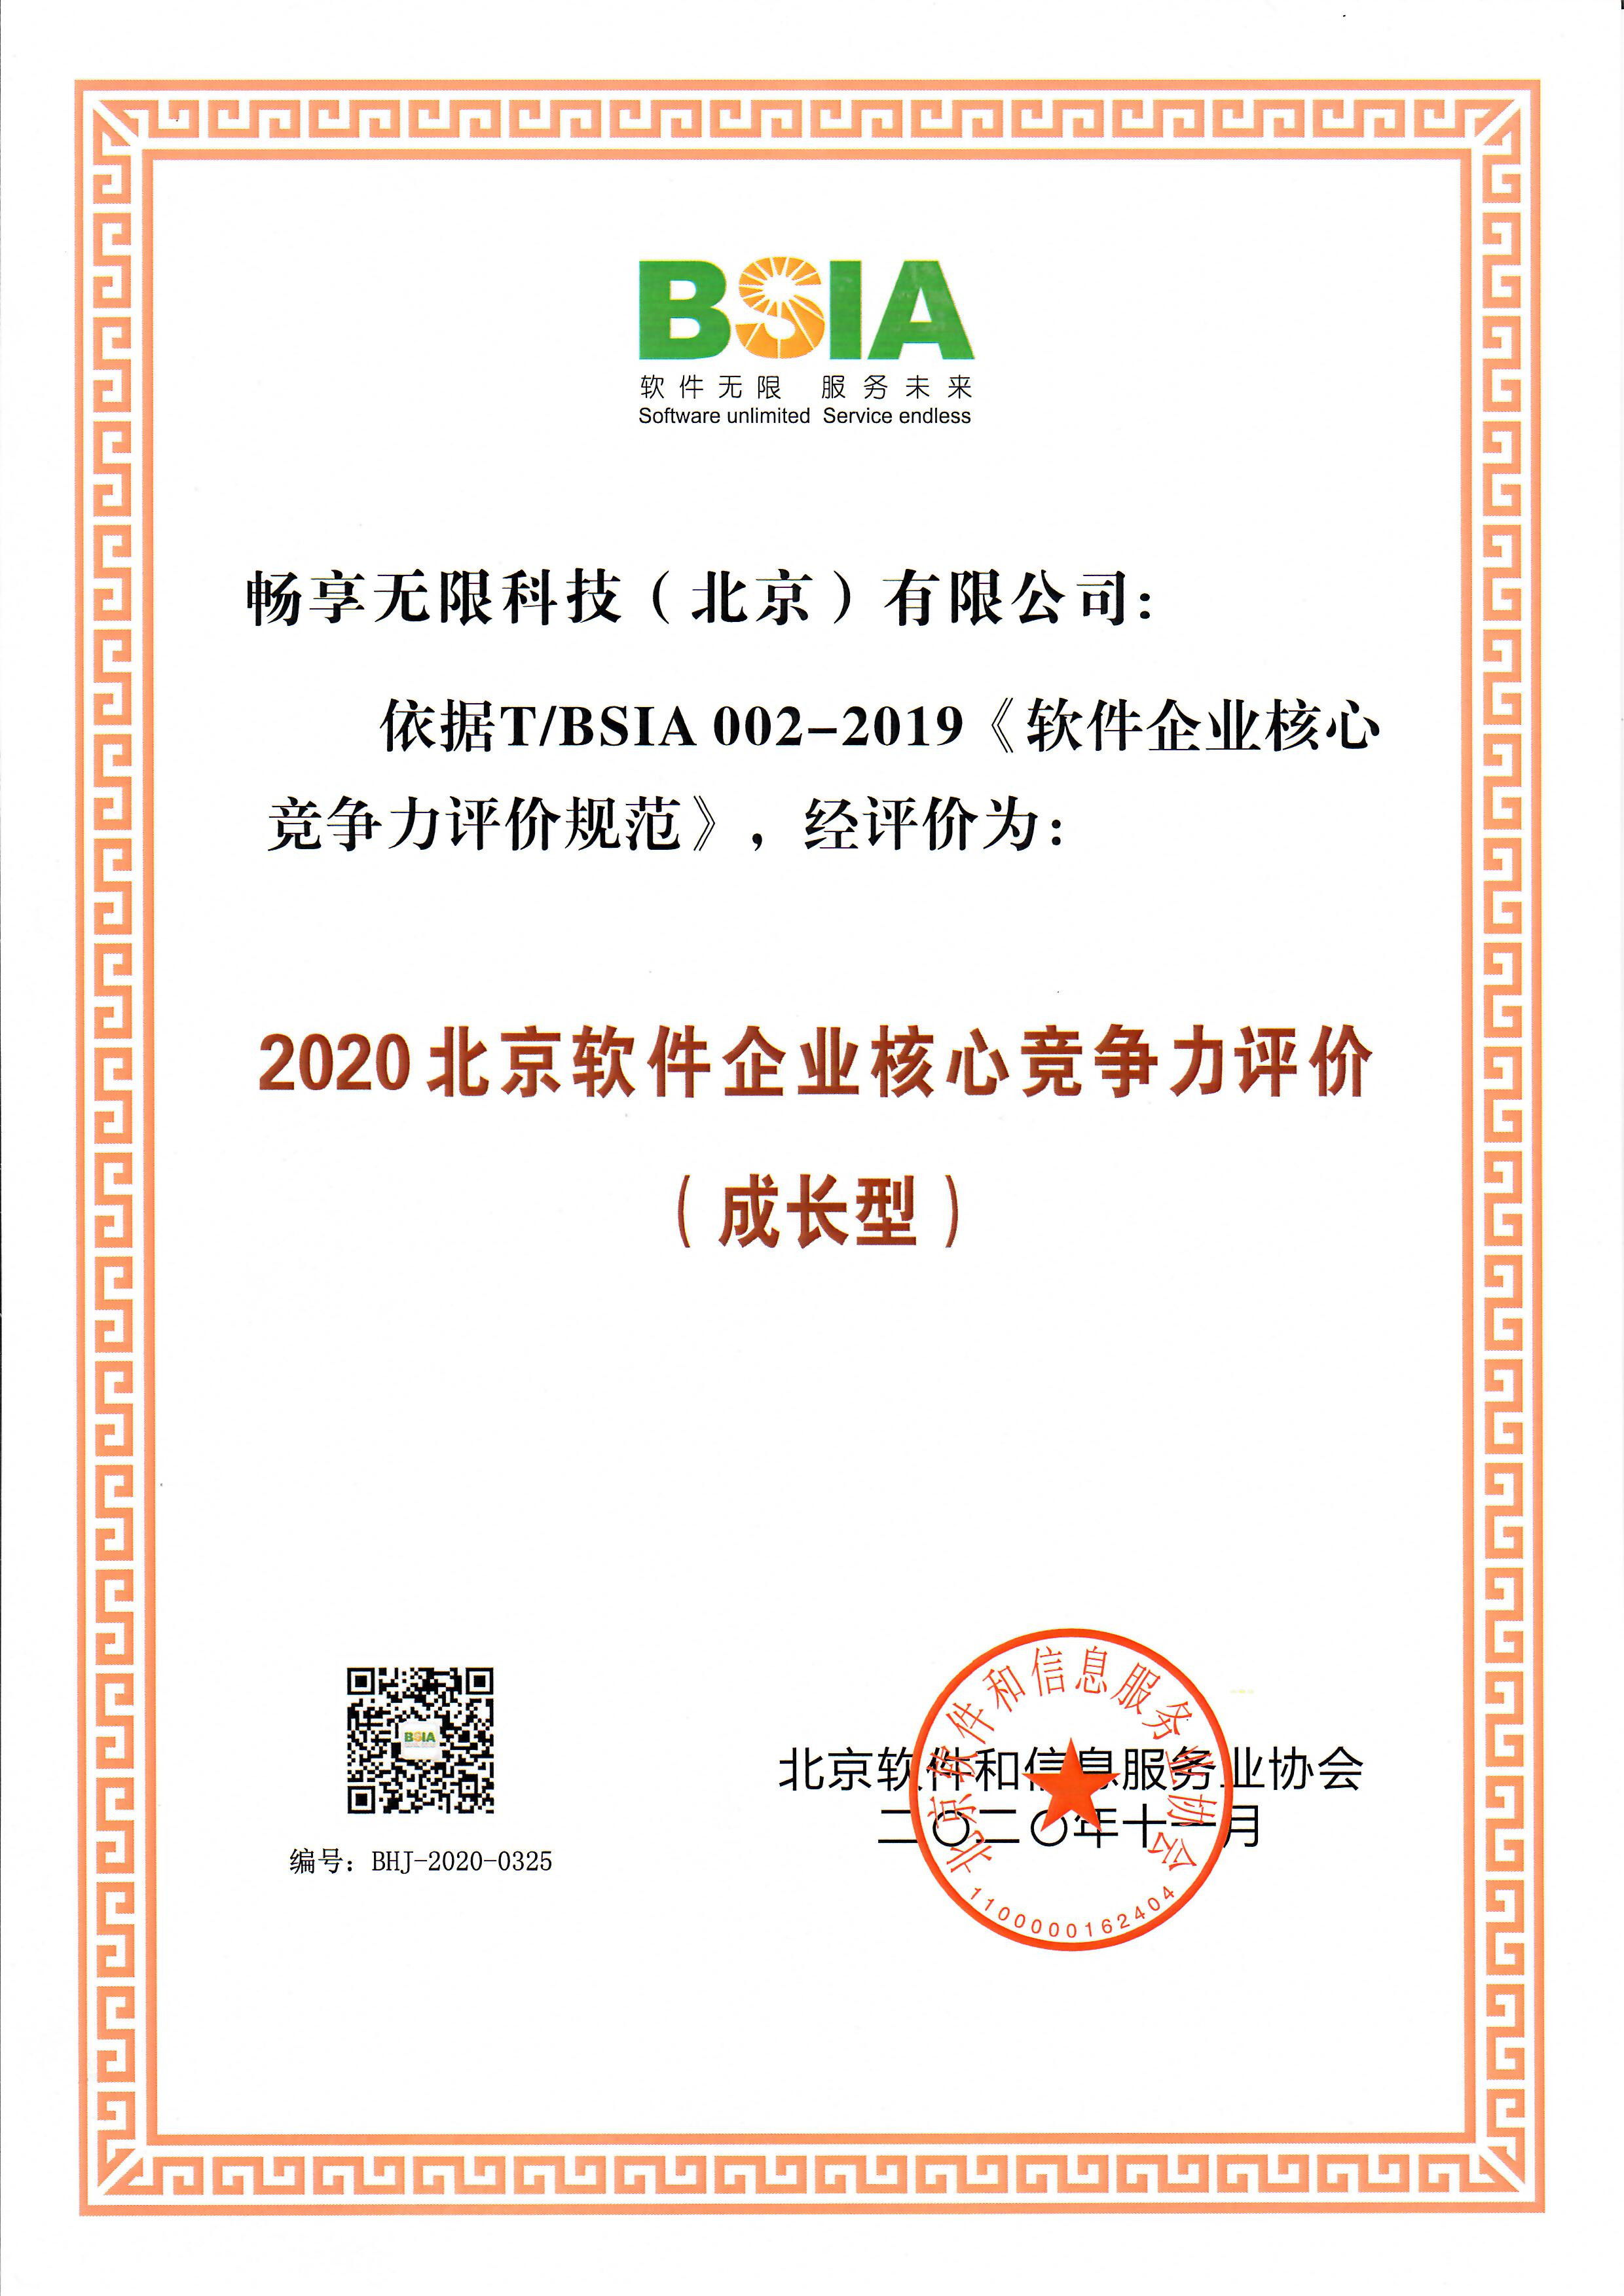                             Beijing Software Enterprise Core Competitiveness Growth Enterprise 2020
                        